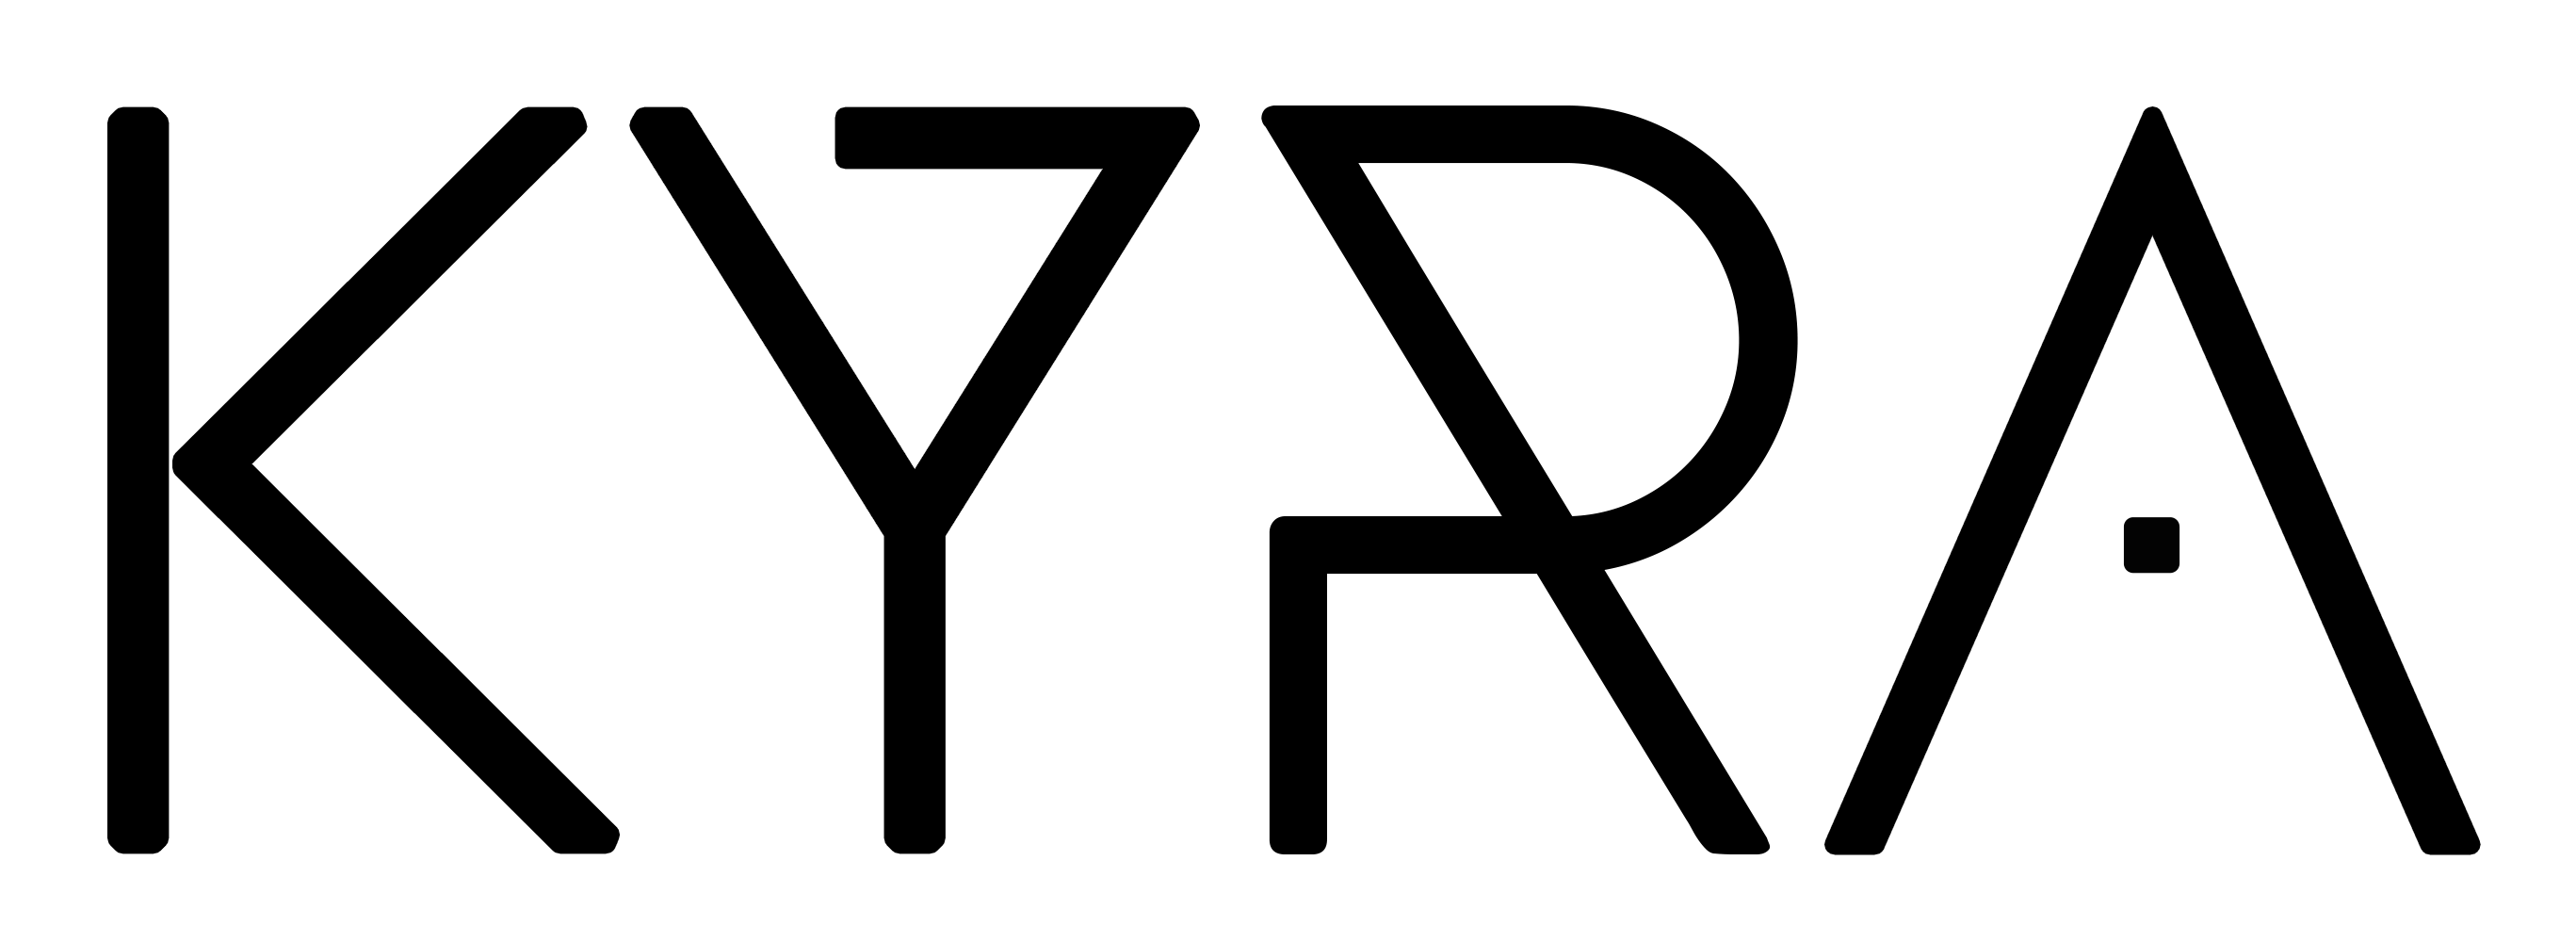 Kyra Logo - Biography – Kyra